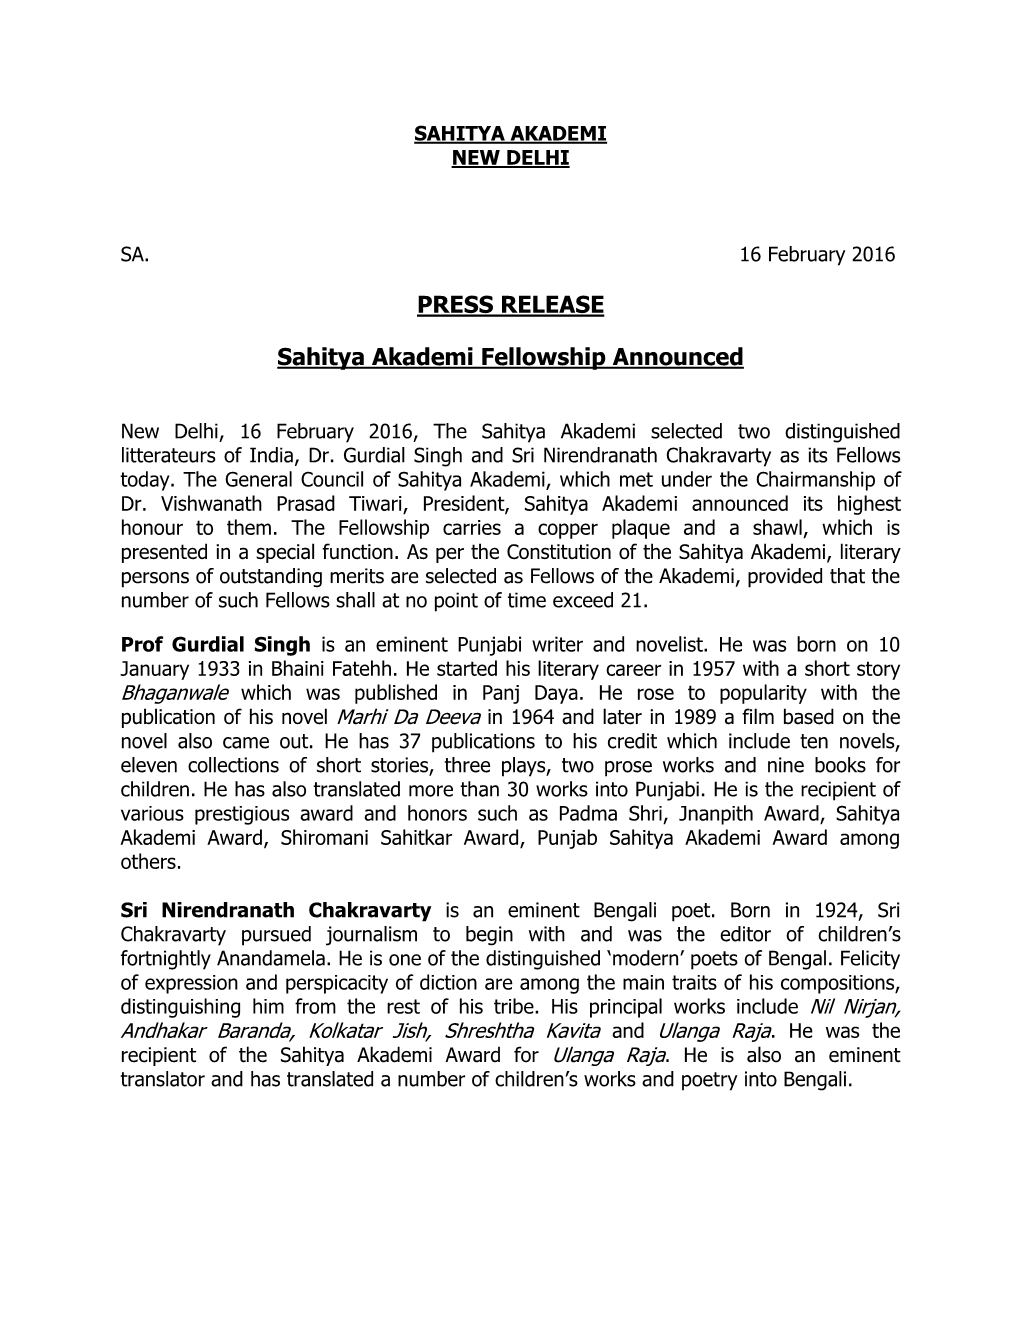 PRESS RELEASE Sahitya Akademi Fellowship Announced